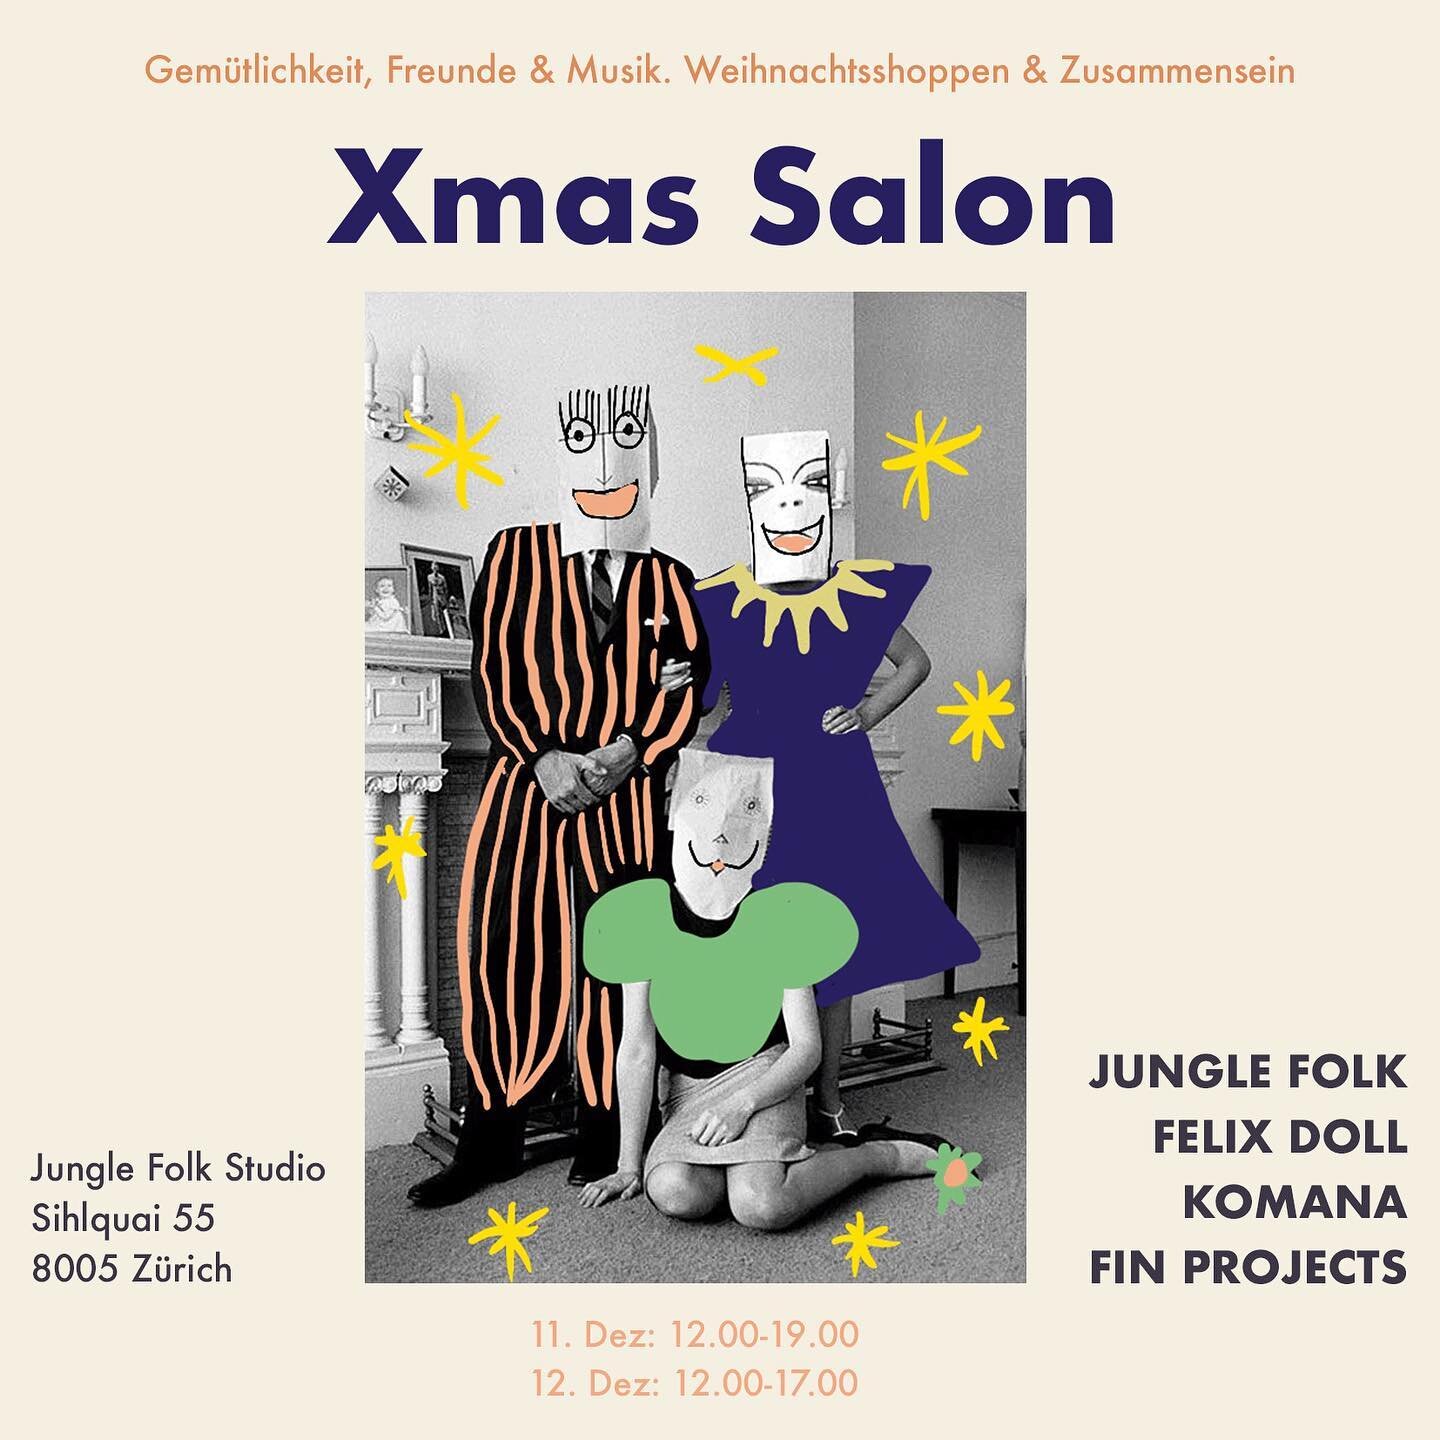 💛❄️ XMAS Salon ❄️💛
Lust auf ein gem&uuml;tliches get-together, wo du nebenbei tolle Weihnachtsgeschenke entdecken kannst? 🎁✨ 
.
Unsere Labels @jungle_folk , @_komana_ , @fin__projects  und @studiofelixdoll laden dich zu ihrem Xmas Salon dieses Woc